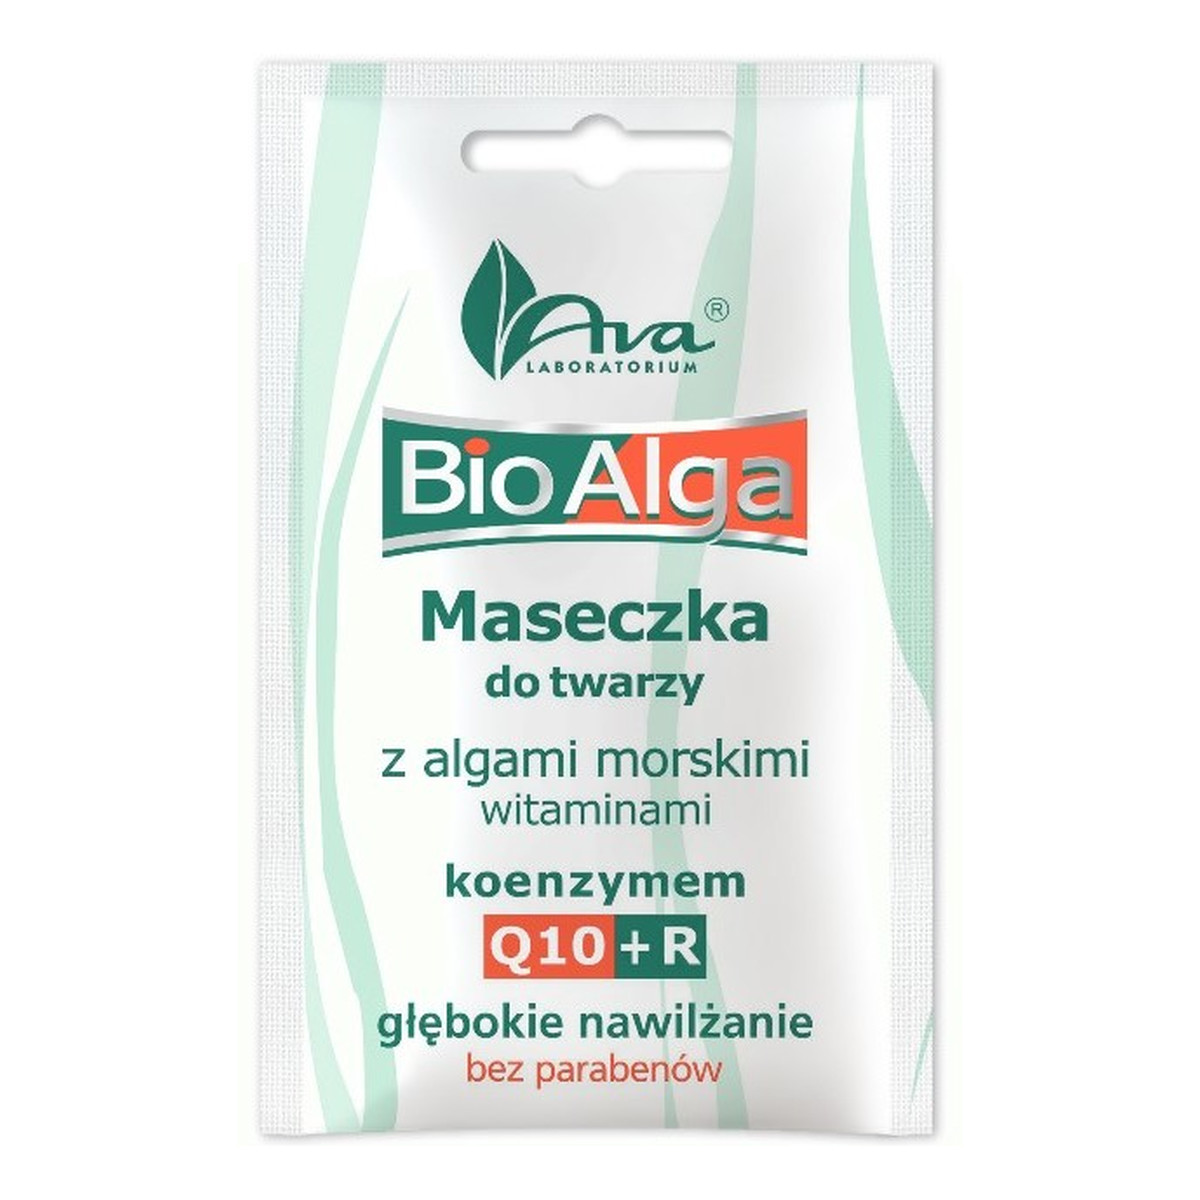 Ava Laboratorium BIO ALGA Maseczka do twarzy odżywczo-wygładzająca do pielęgnacji skóry suchej i normalnej 7ml